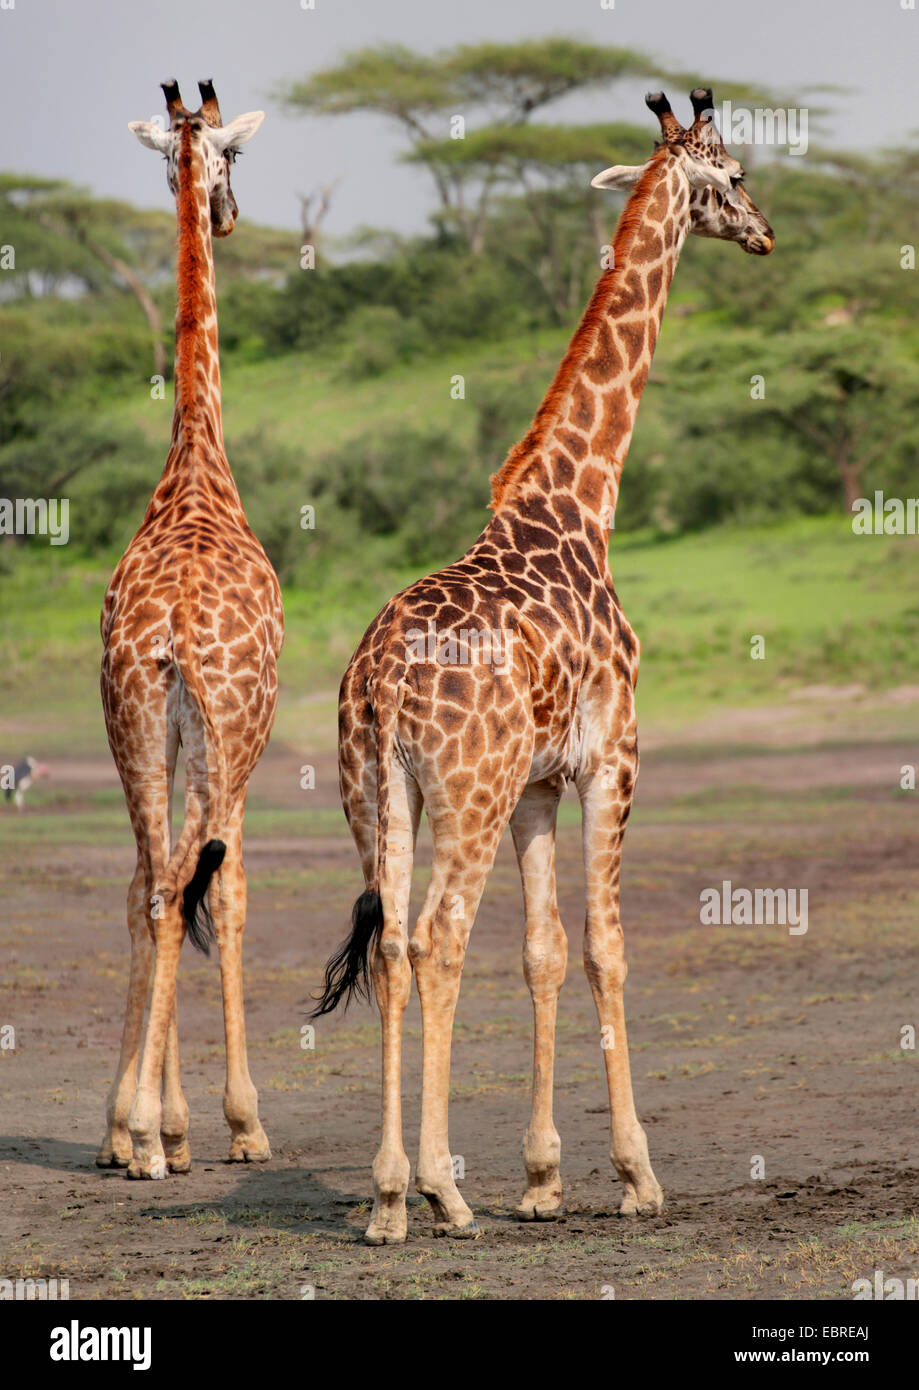 Les Masais Girafe (Giraffa camelopardalis tippelskirchi), vue arrière de deux girafes, Tanzanie, Serengeti National Park Banque D'Images